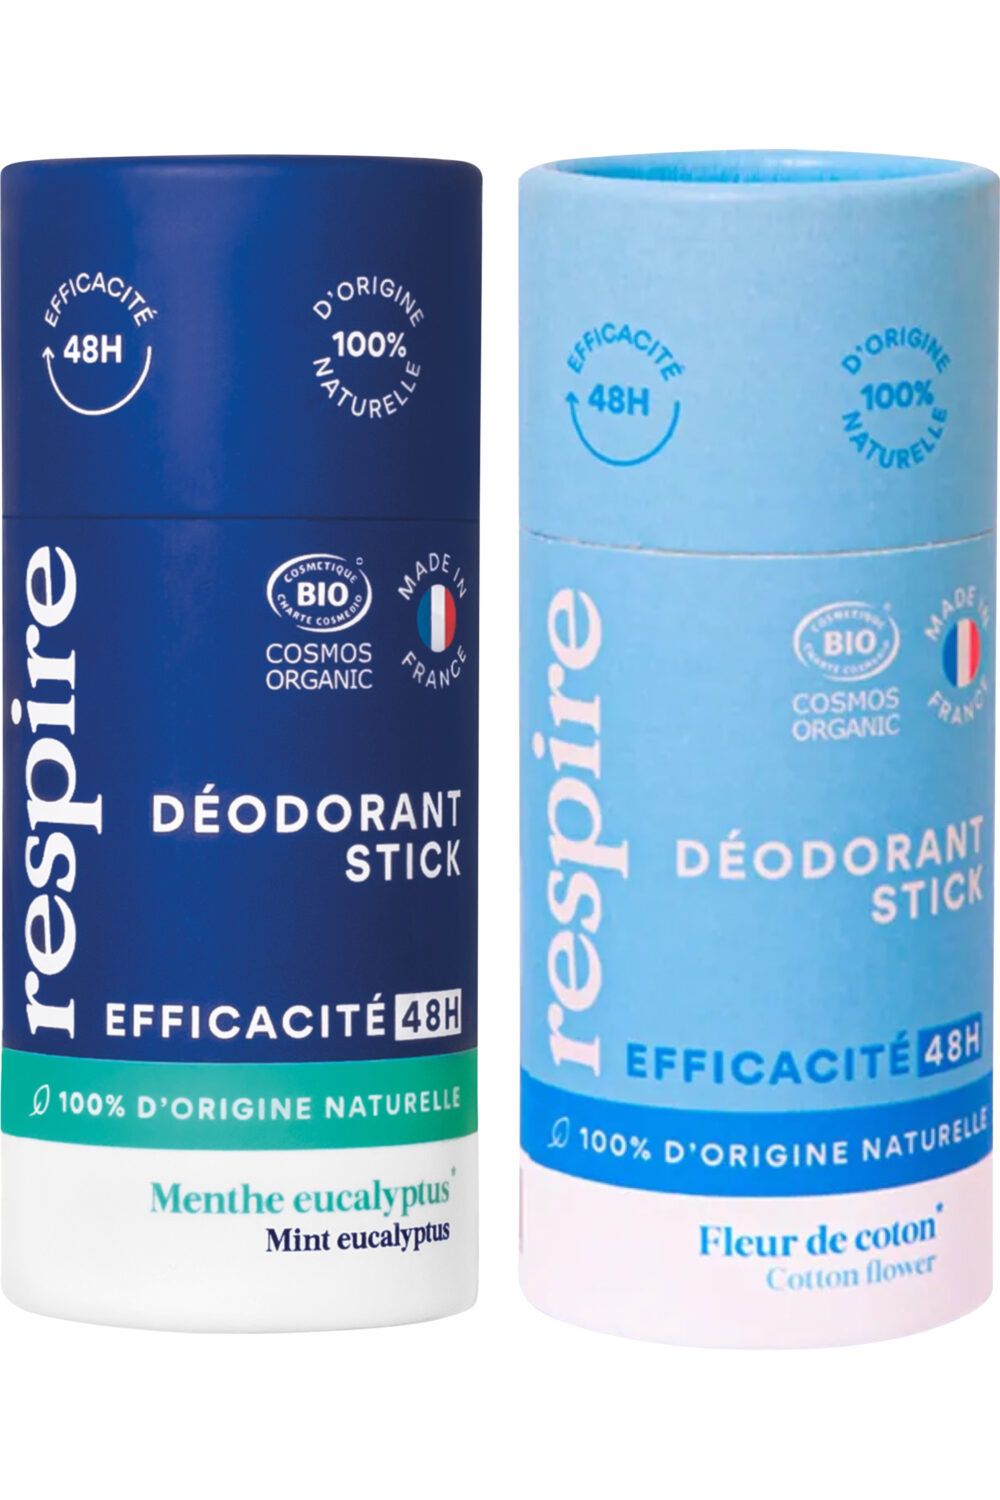 Respire - Duo de déodorants solides Fleur de Coton & Menthe eucalyptus